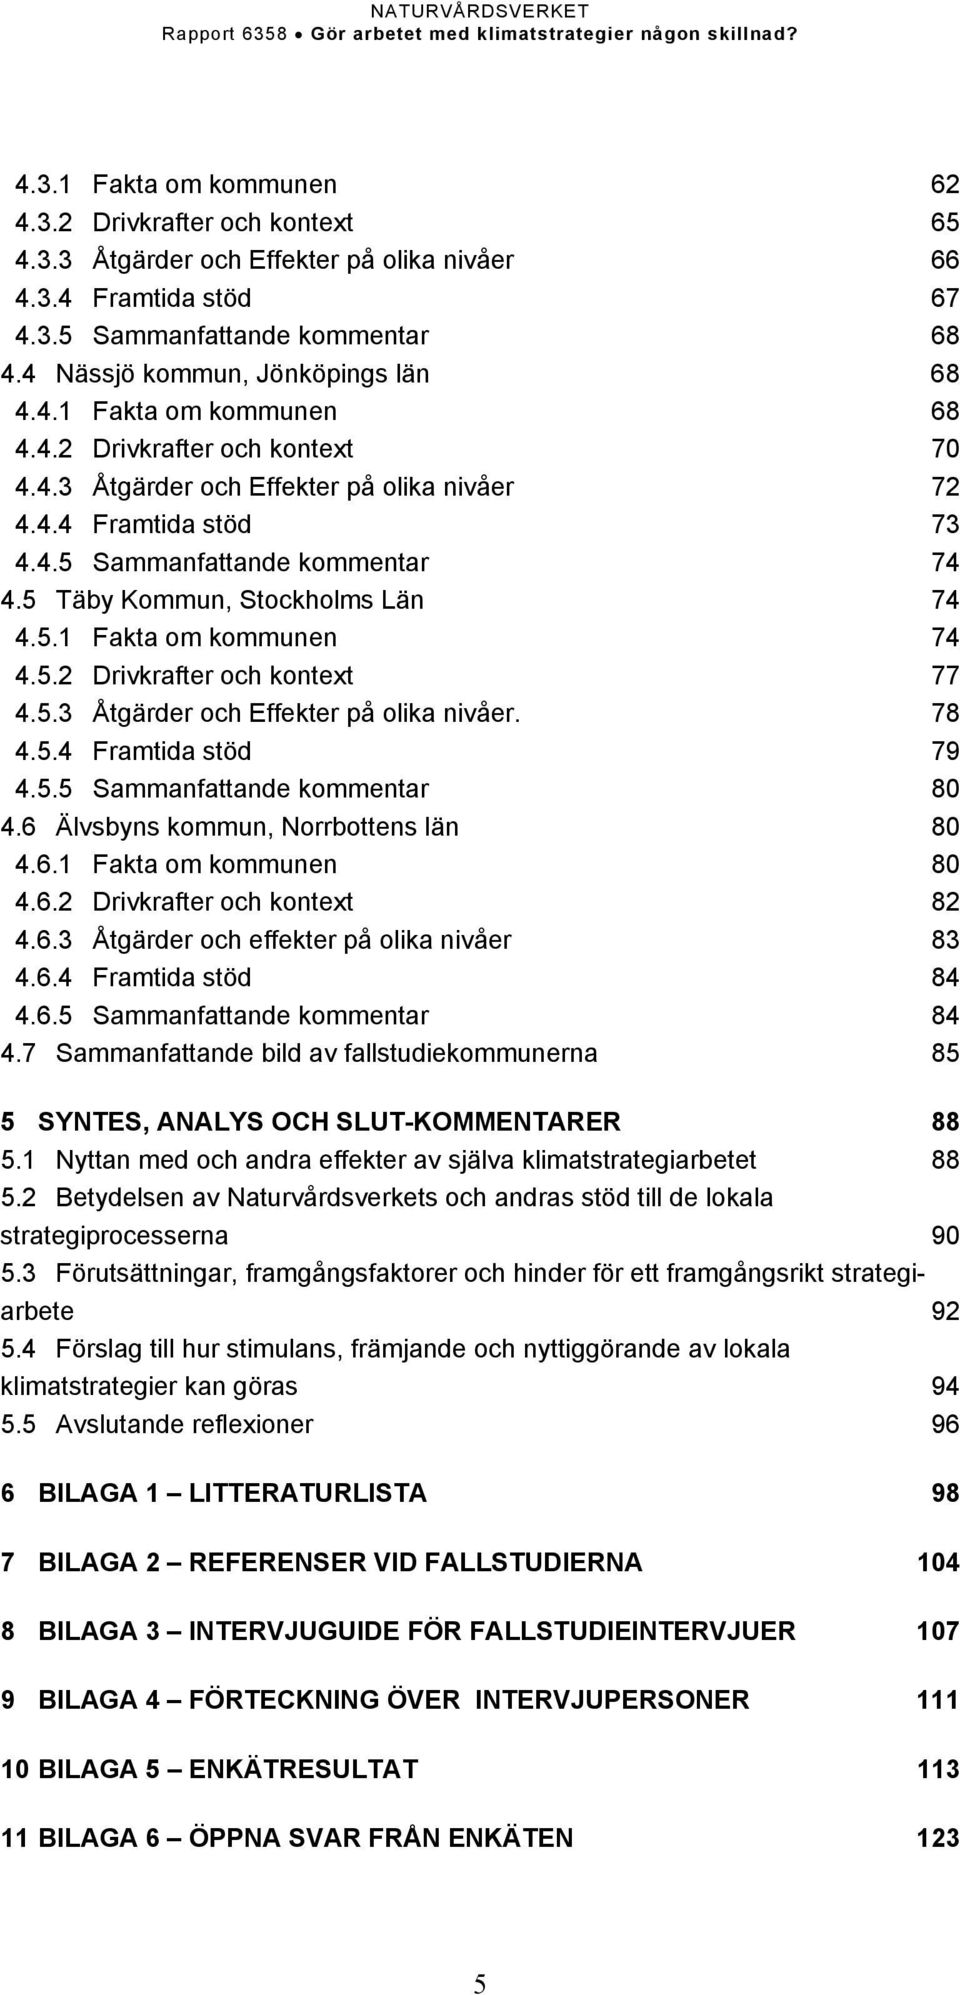 5 Täby Kommun, Stockholms Län 74 4.5.1 Fakta om kommunen 74 4.5.2 Drivkrafter och kontext 77 4.5.3 Åtgärder och Effekter på olika nivåer. 78 4.5.4 Framtida stöd 79 4.5.5 Sammanfattande kommentar 80 4.